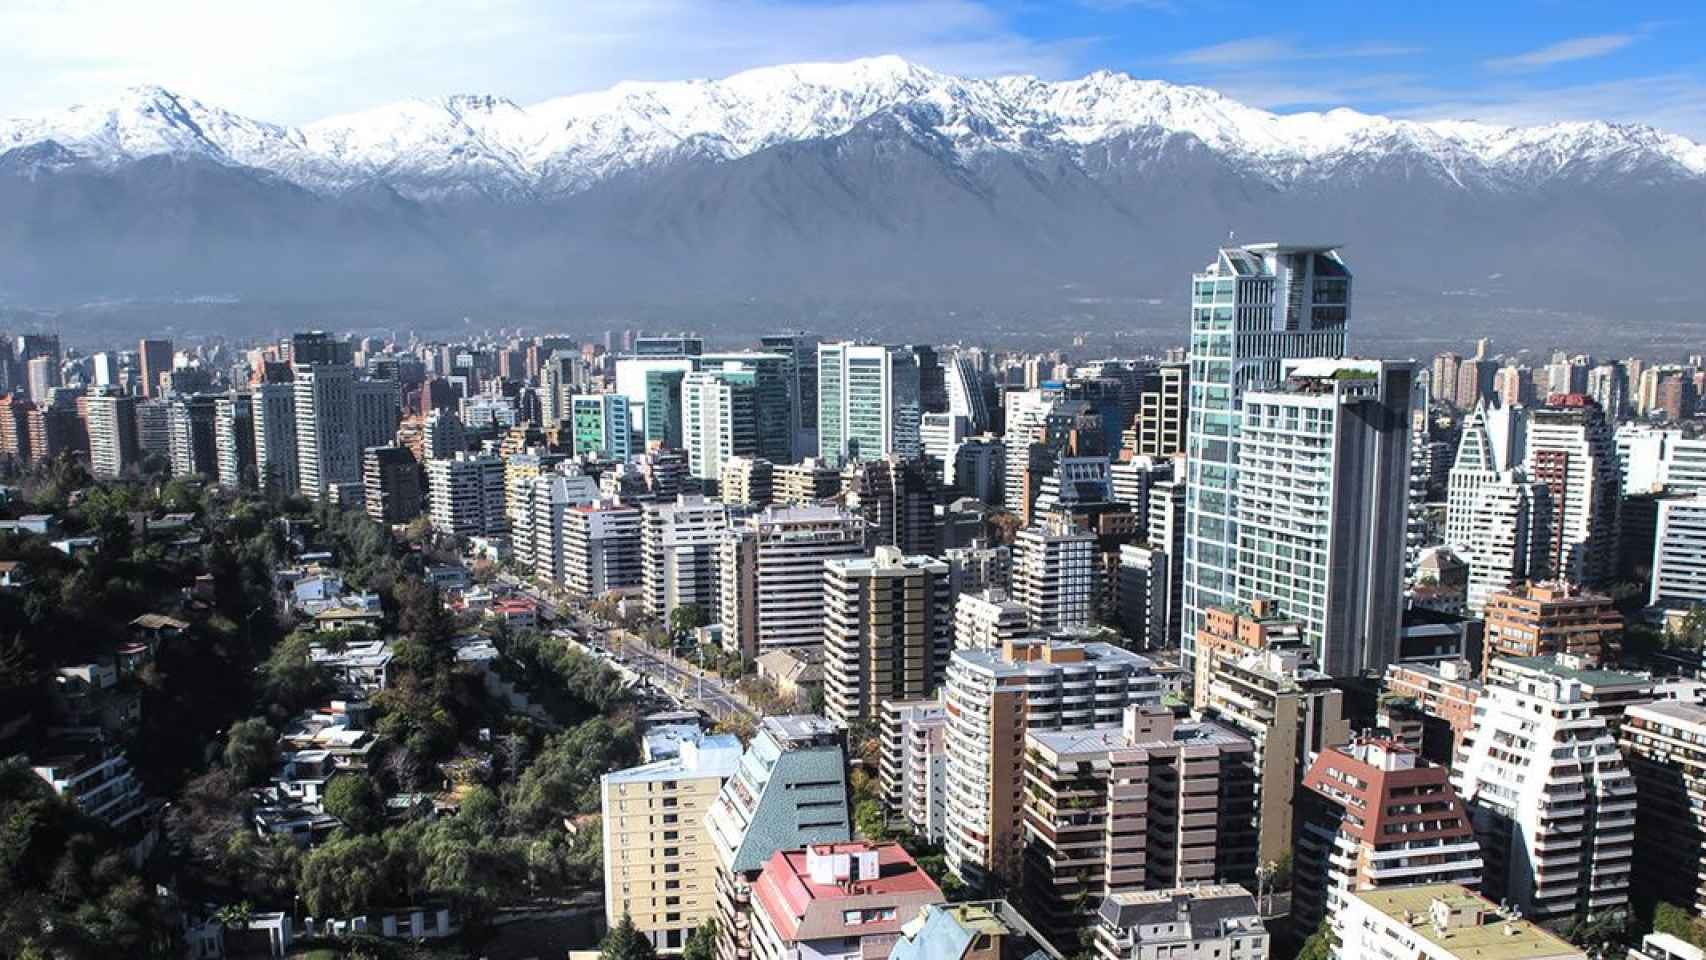 Santiago de Chile ha sido votada como una de las mejores ciudades para invertir en latinoamérica / COPA AIRLINES